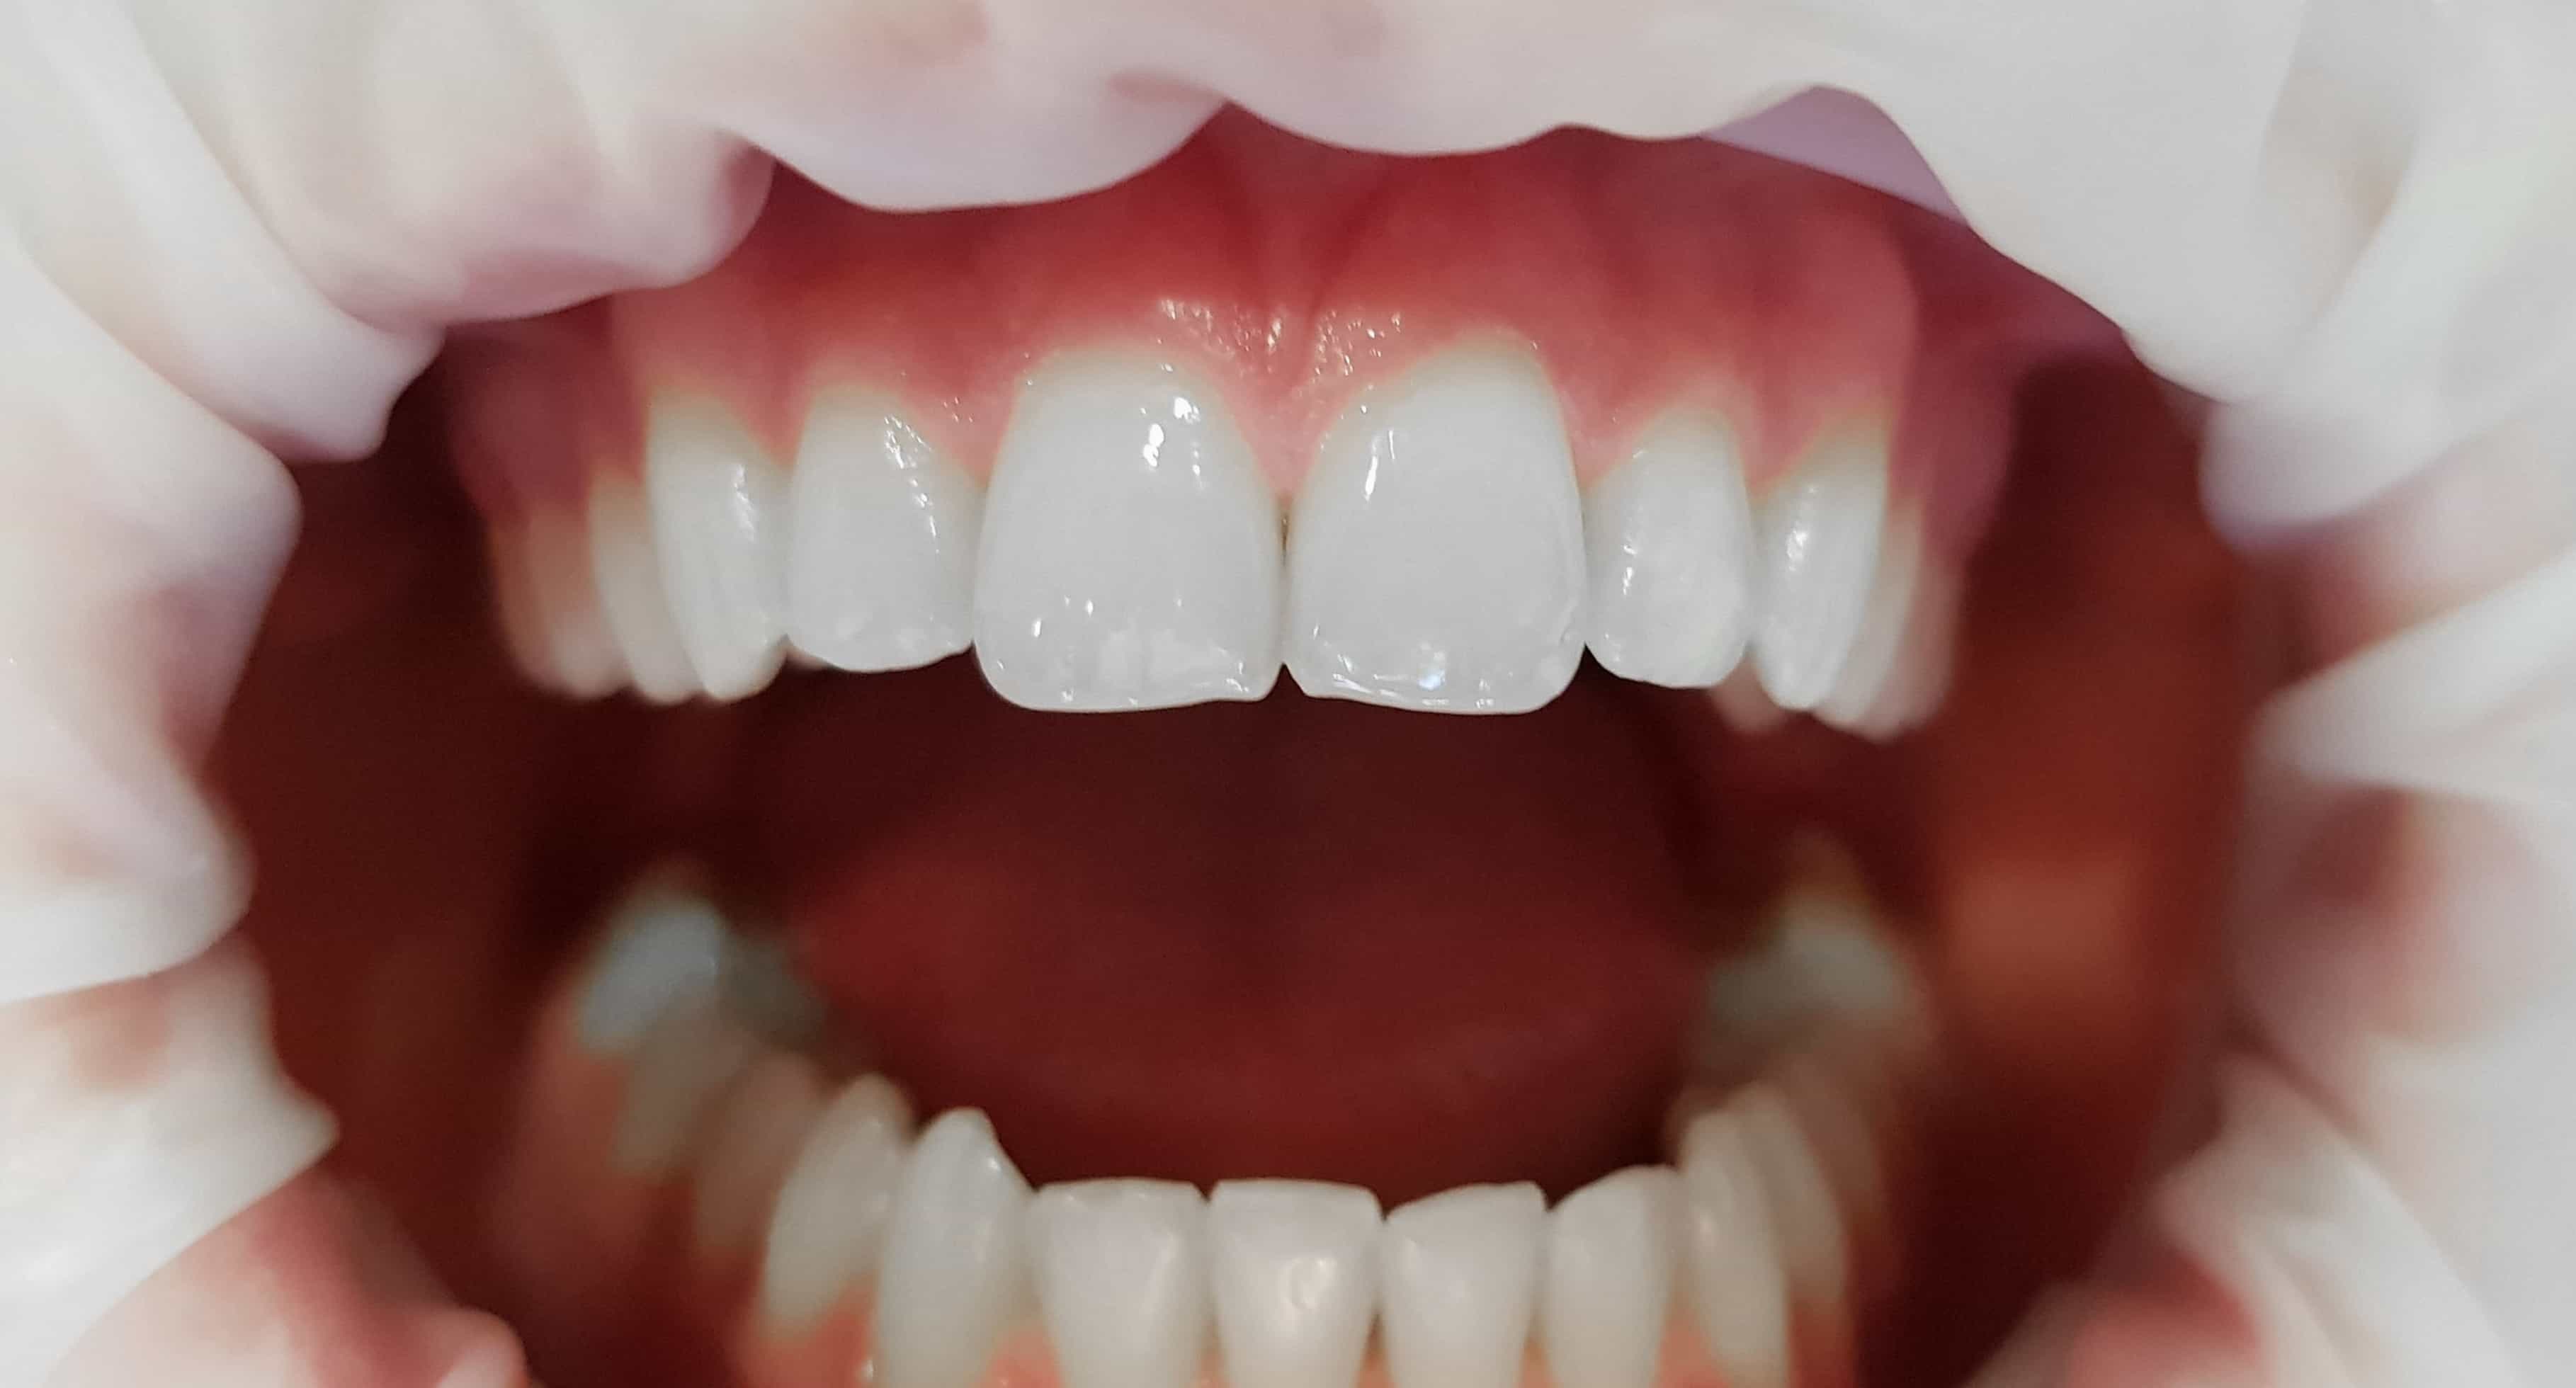 Bonding – estetyczna pomoc w błyskawicznej korekcie kształtu i koloru zębów